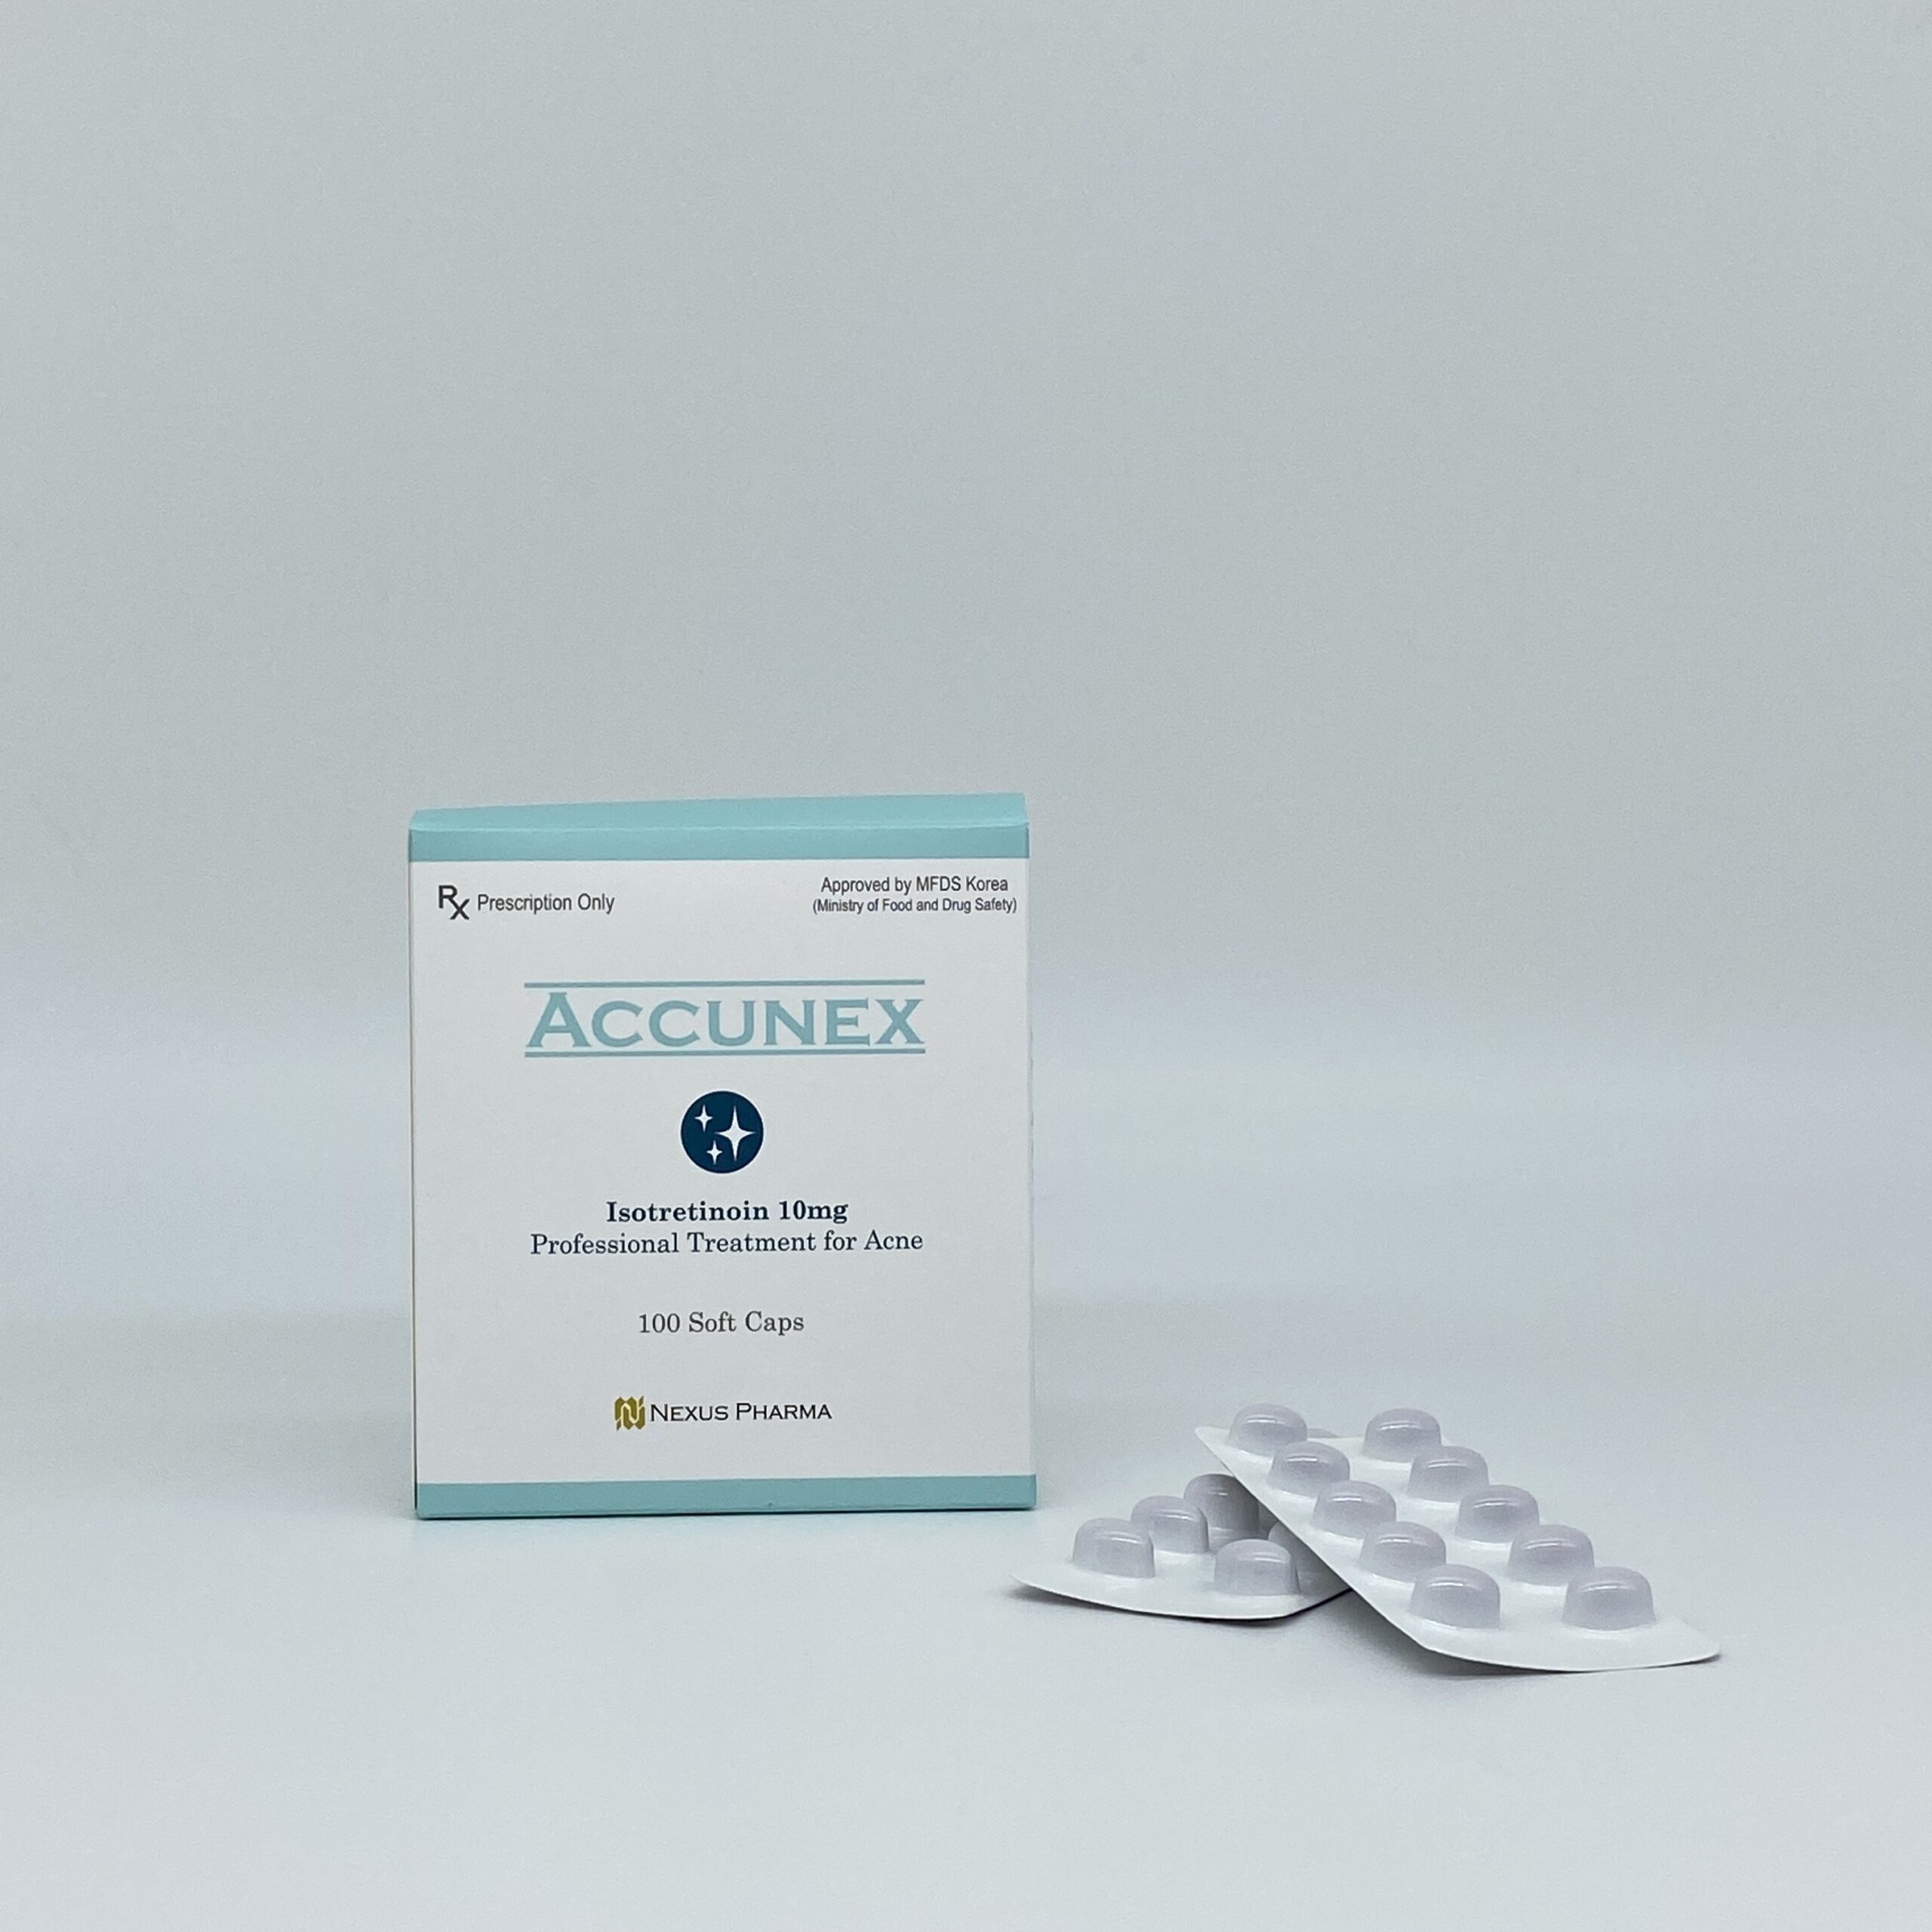 Accunex capsules